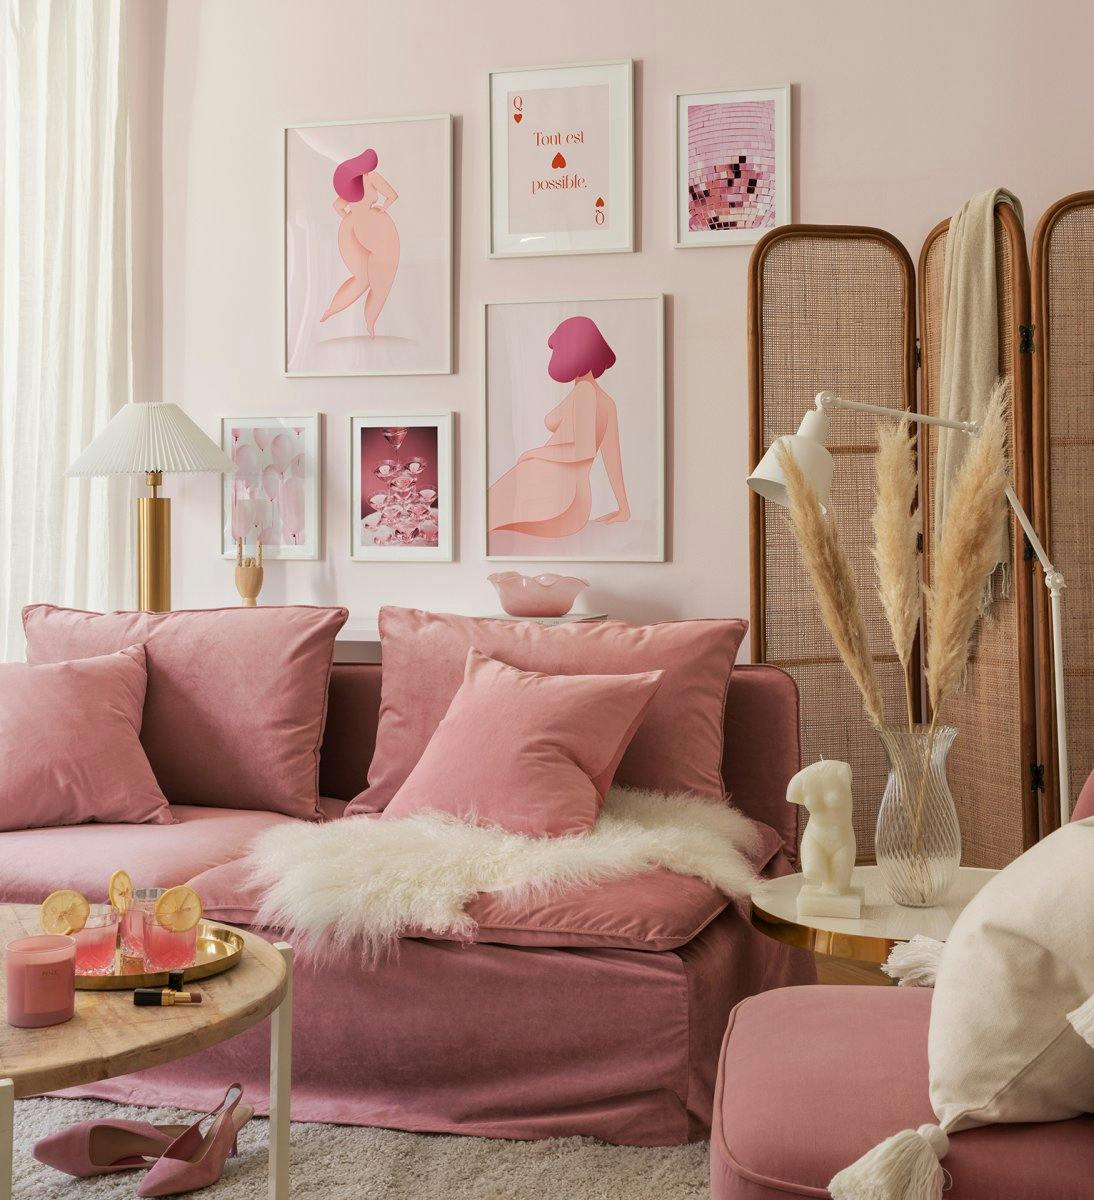 Tyttövoiman inspiroima galleriaseinä vaaleanpunaisella naisellisista muodoista, kuvituksista ja valokuvista valkoisilla puukehyk